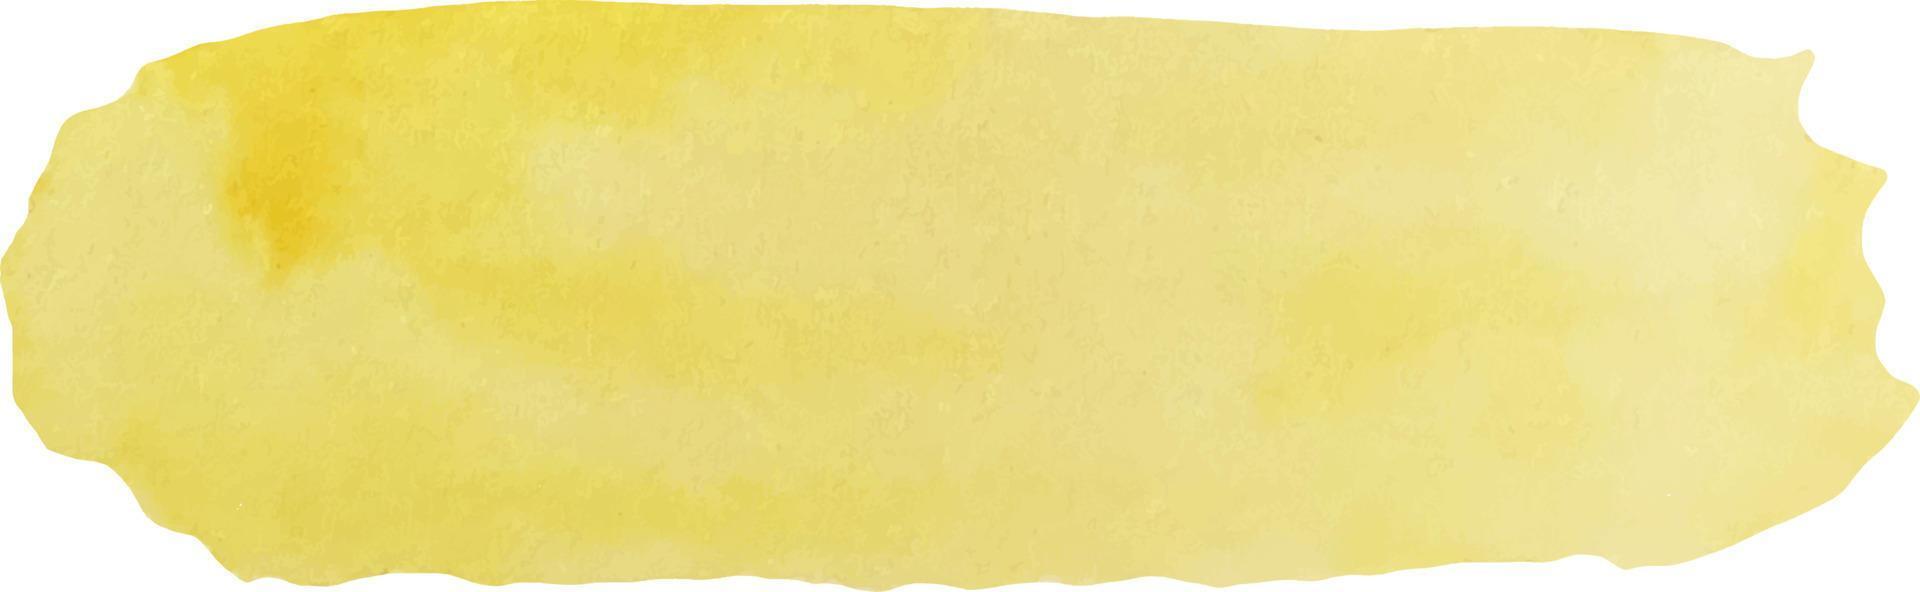 aquarell abstrakter gelber hintergrund mit textur von fleck, spray, spritzer und fleck, modeelementen vektor